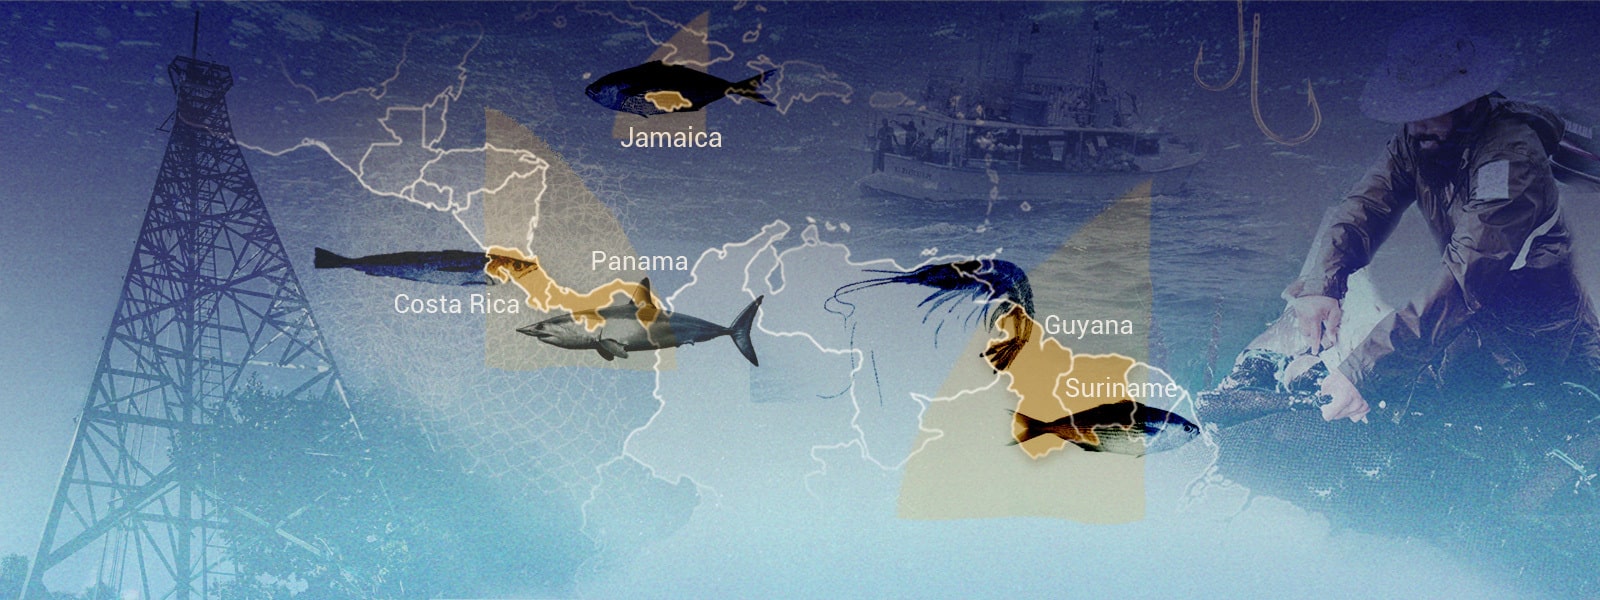 Gráfico sobre pesca INDNR con distintos peces y el mapa de Centroamérica, Suramérica y el Caribe de fondo